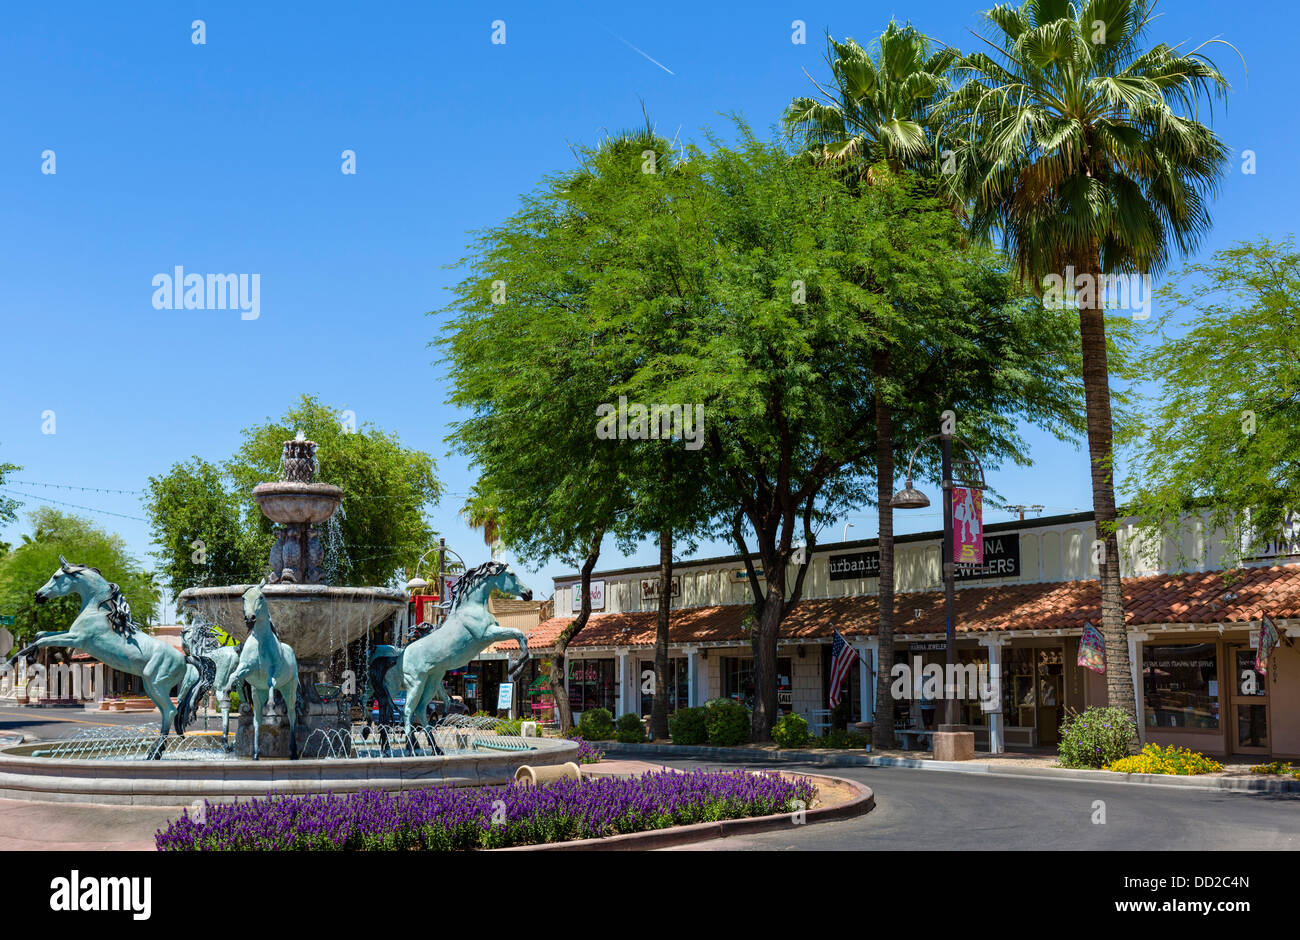 Las tiendas de la Quinta Avenida, el distrito de compras, de Scottsdale, Arizona, EE.UU. Foto de stock